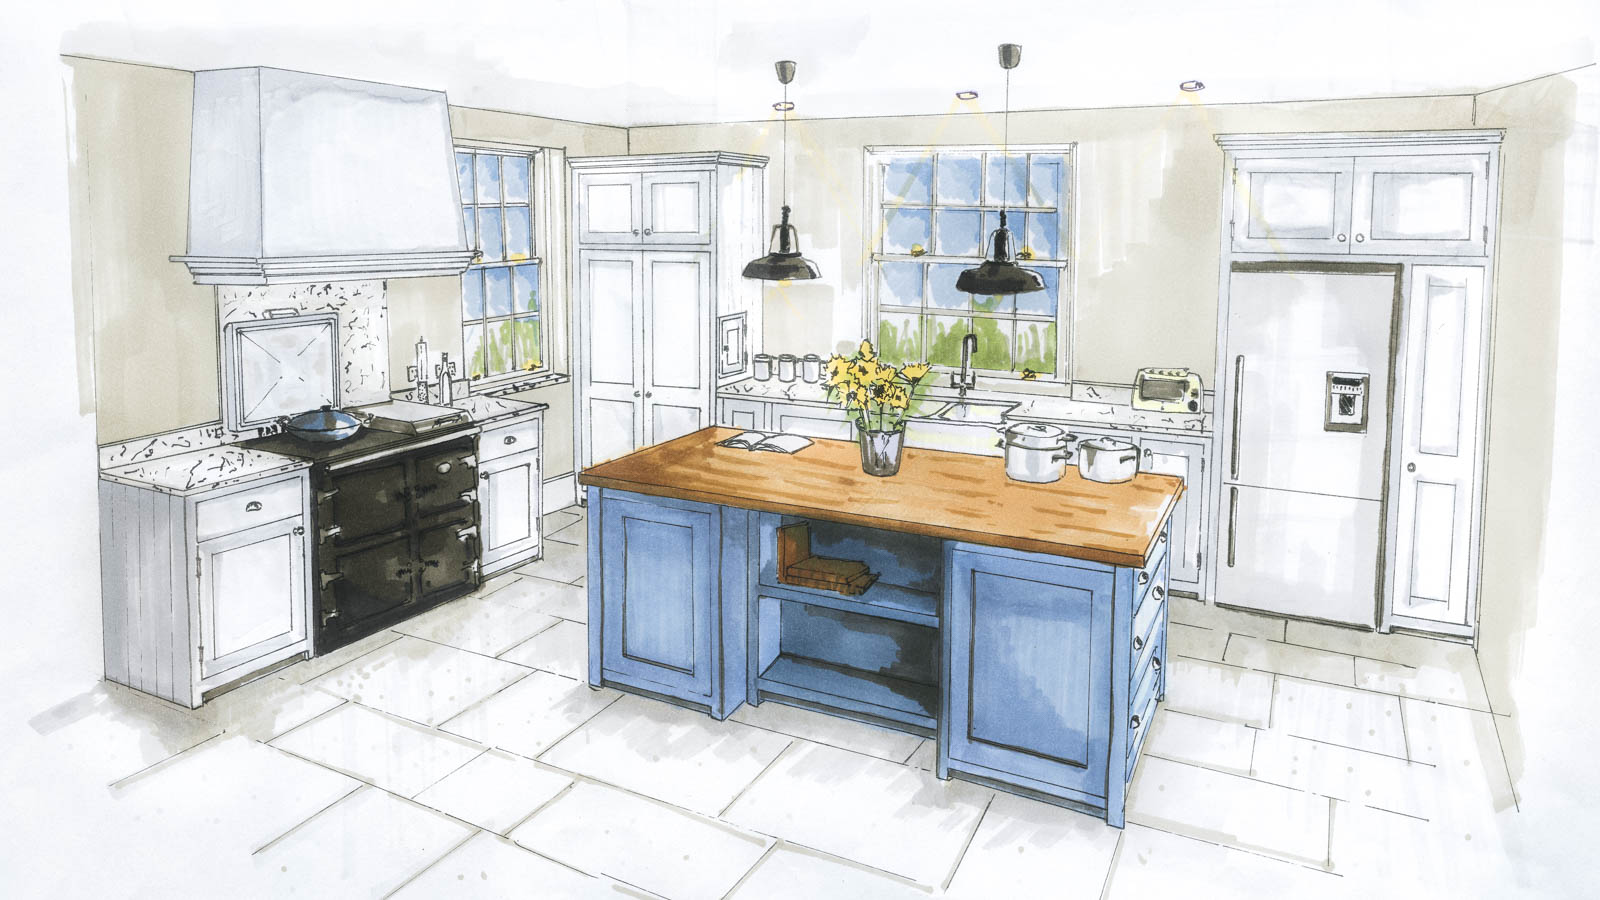 Shepard kitchen sketch